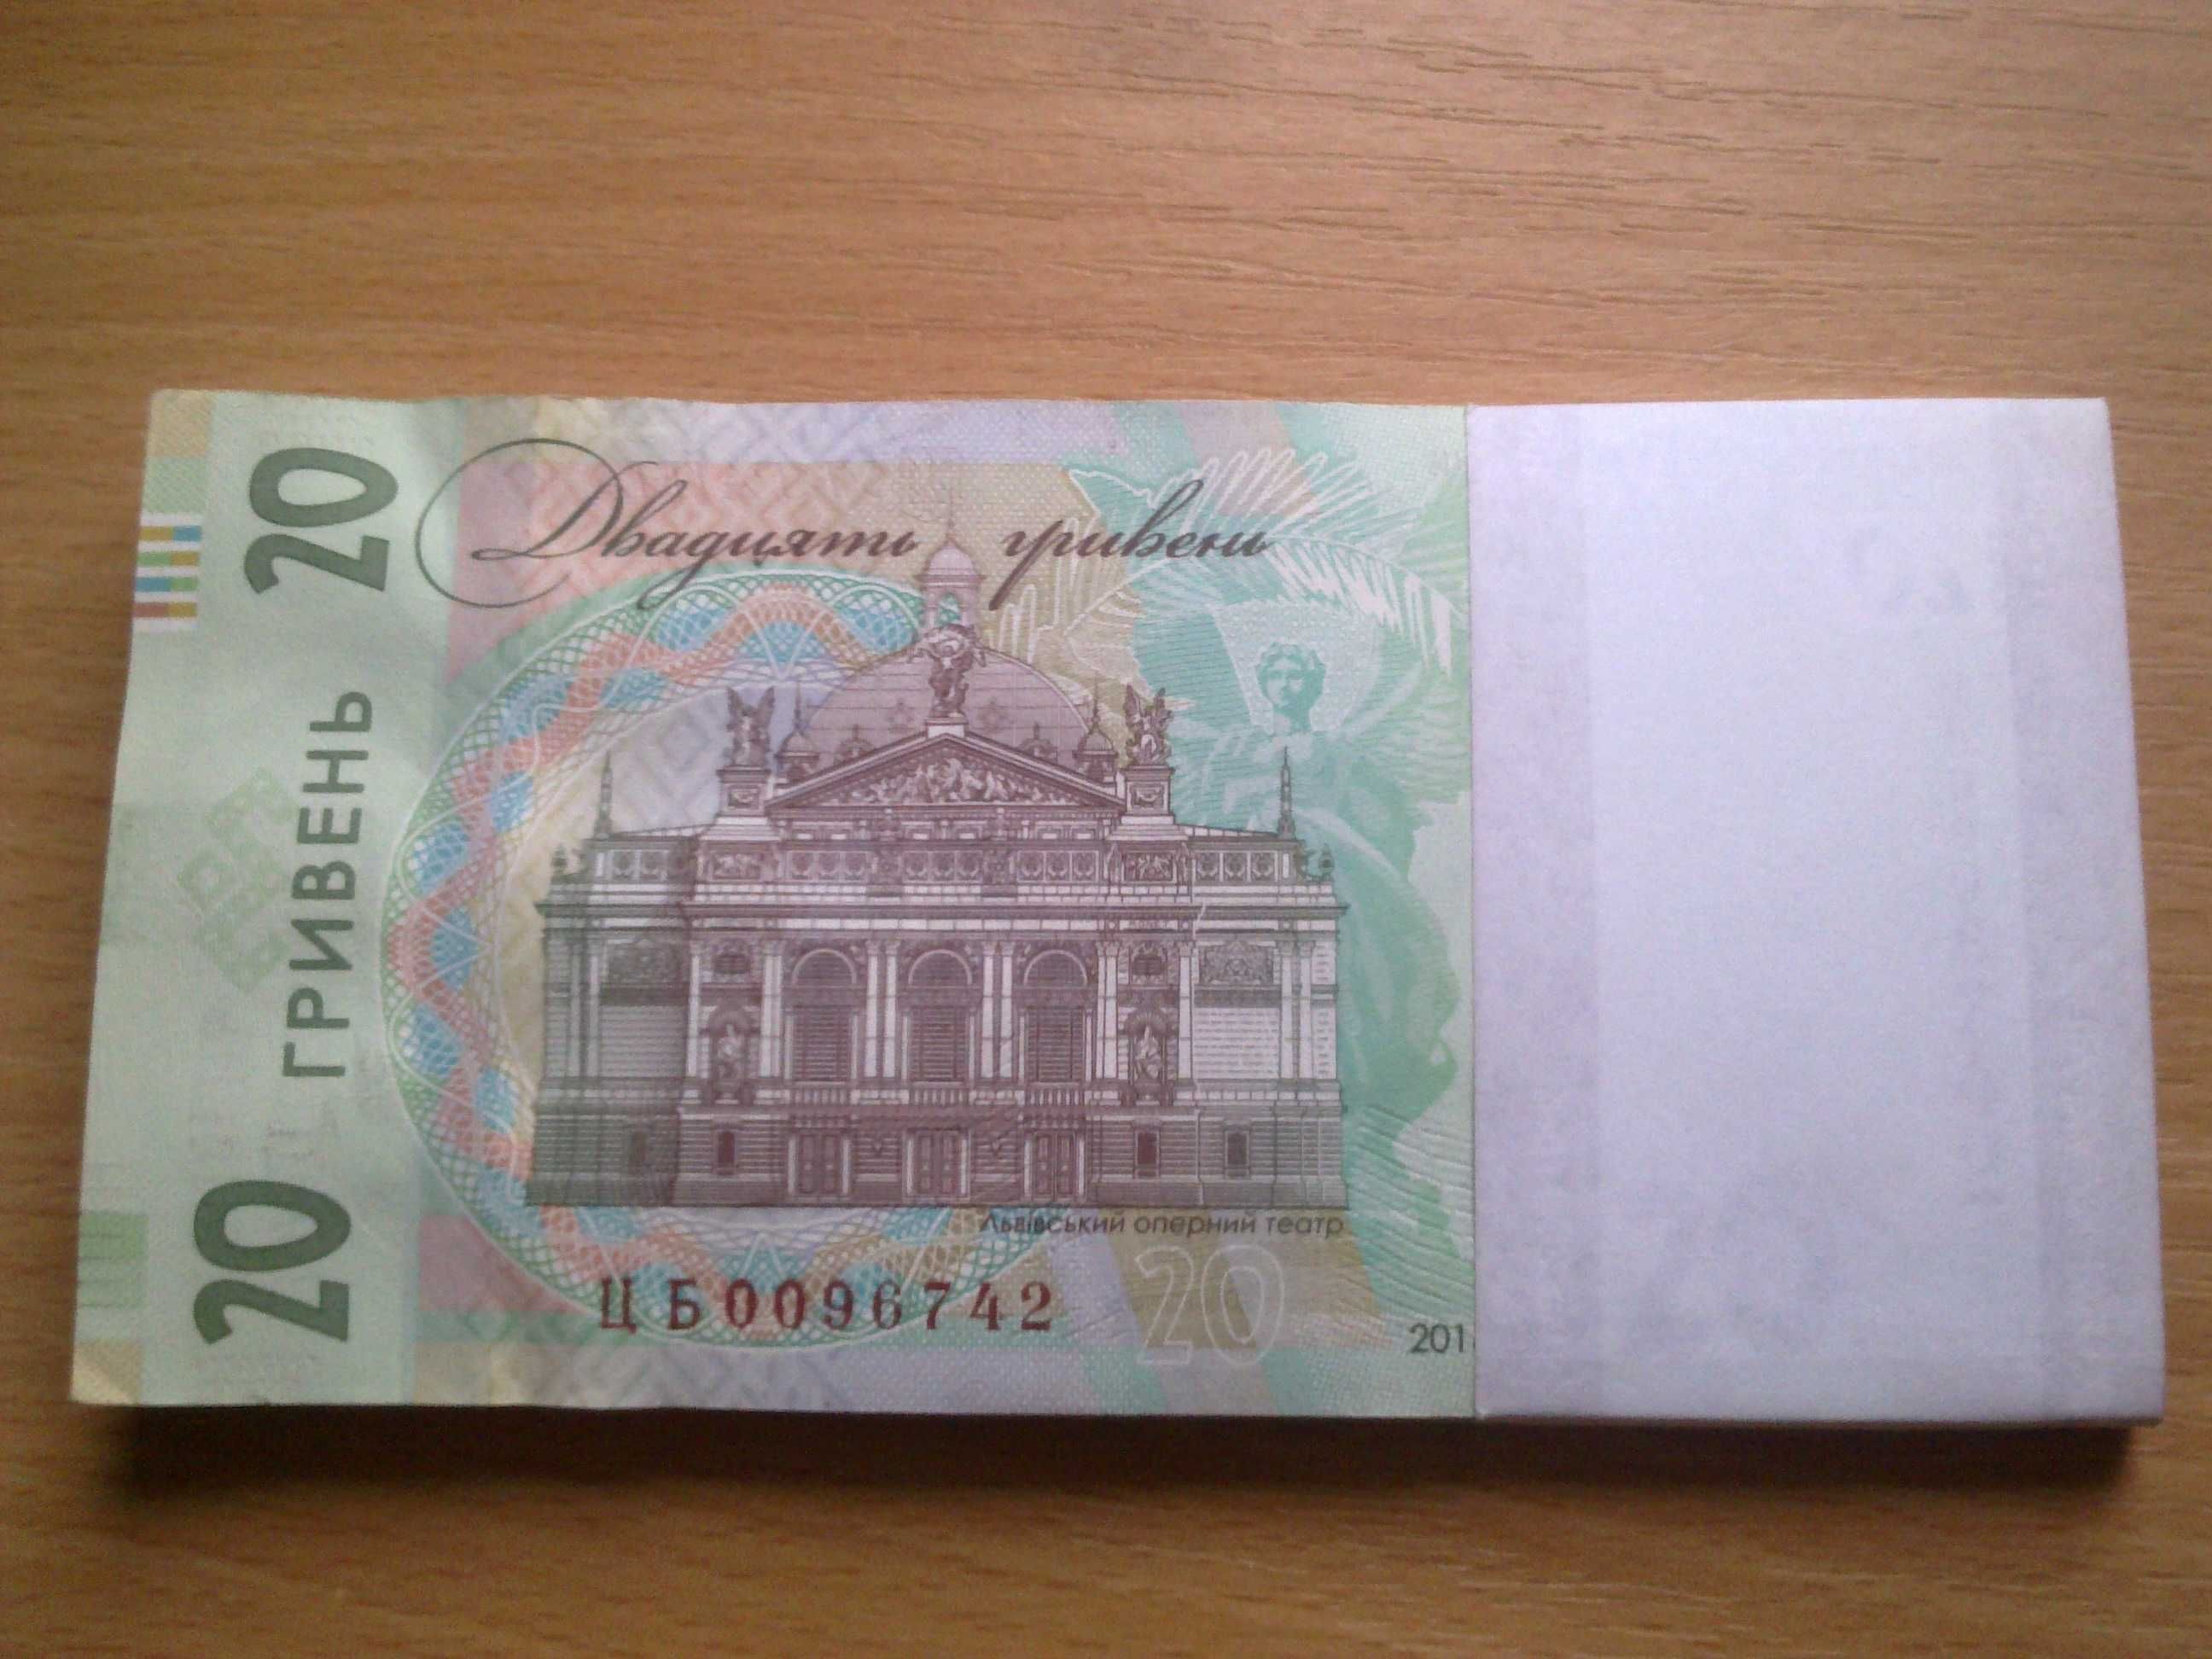 50 гривень гривен. Подпись Гетьман